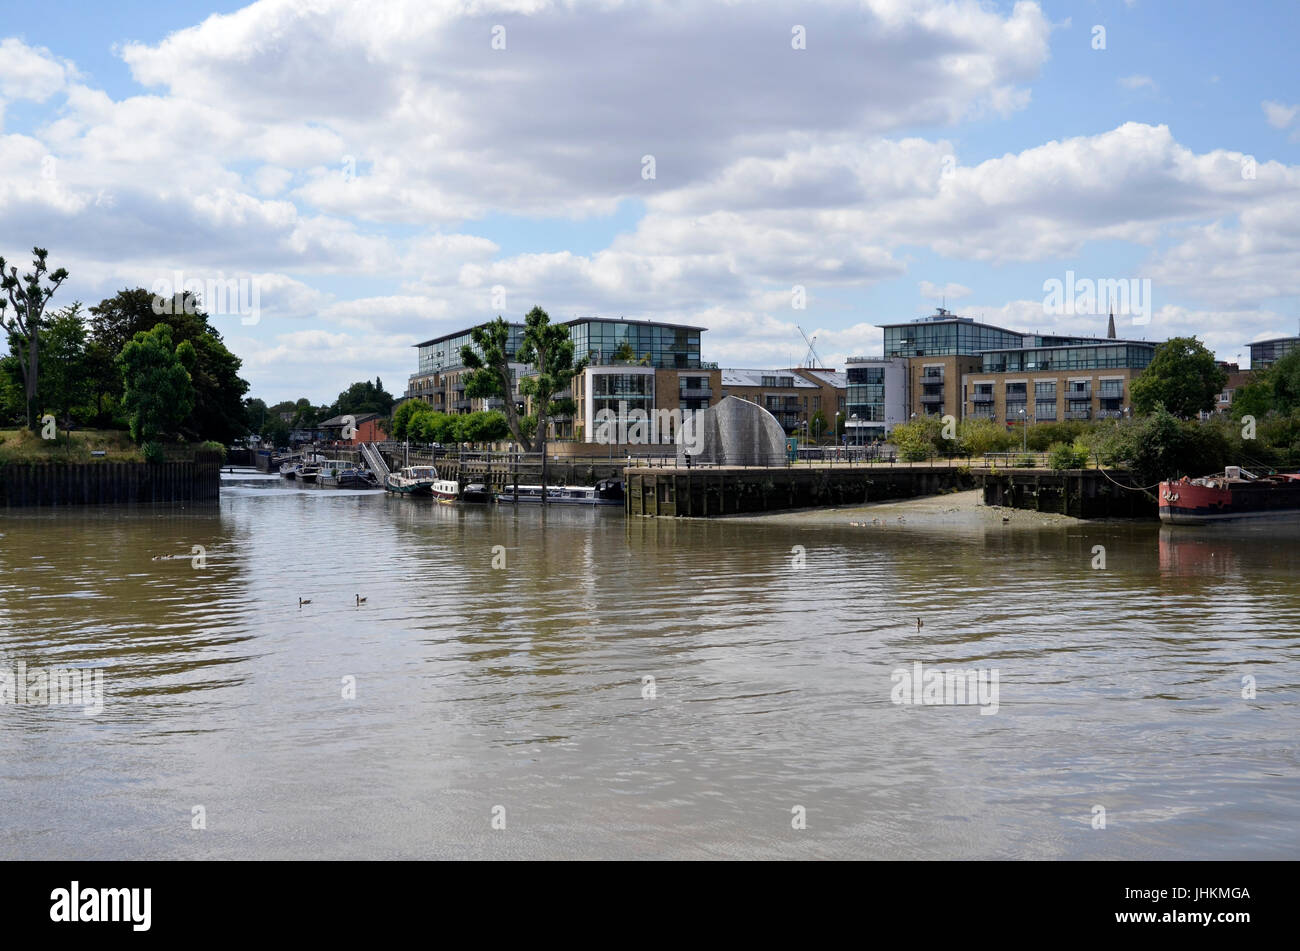 Am Zusammenfluss von der Themse und dem Grand Union Canal (Fluss Brent) bei Brentford in Westlondon Stockfoto